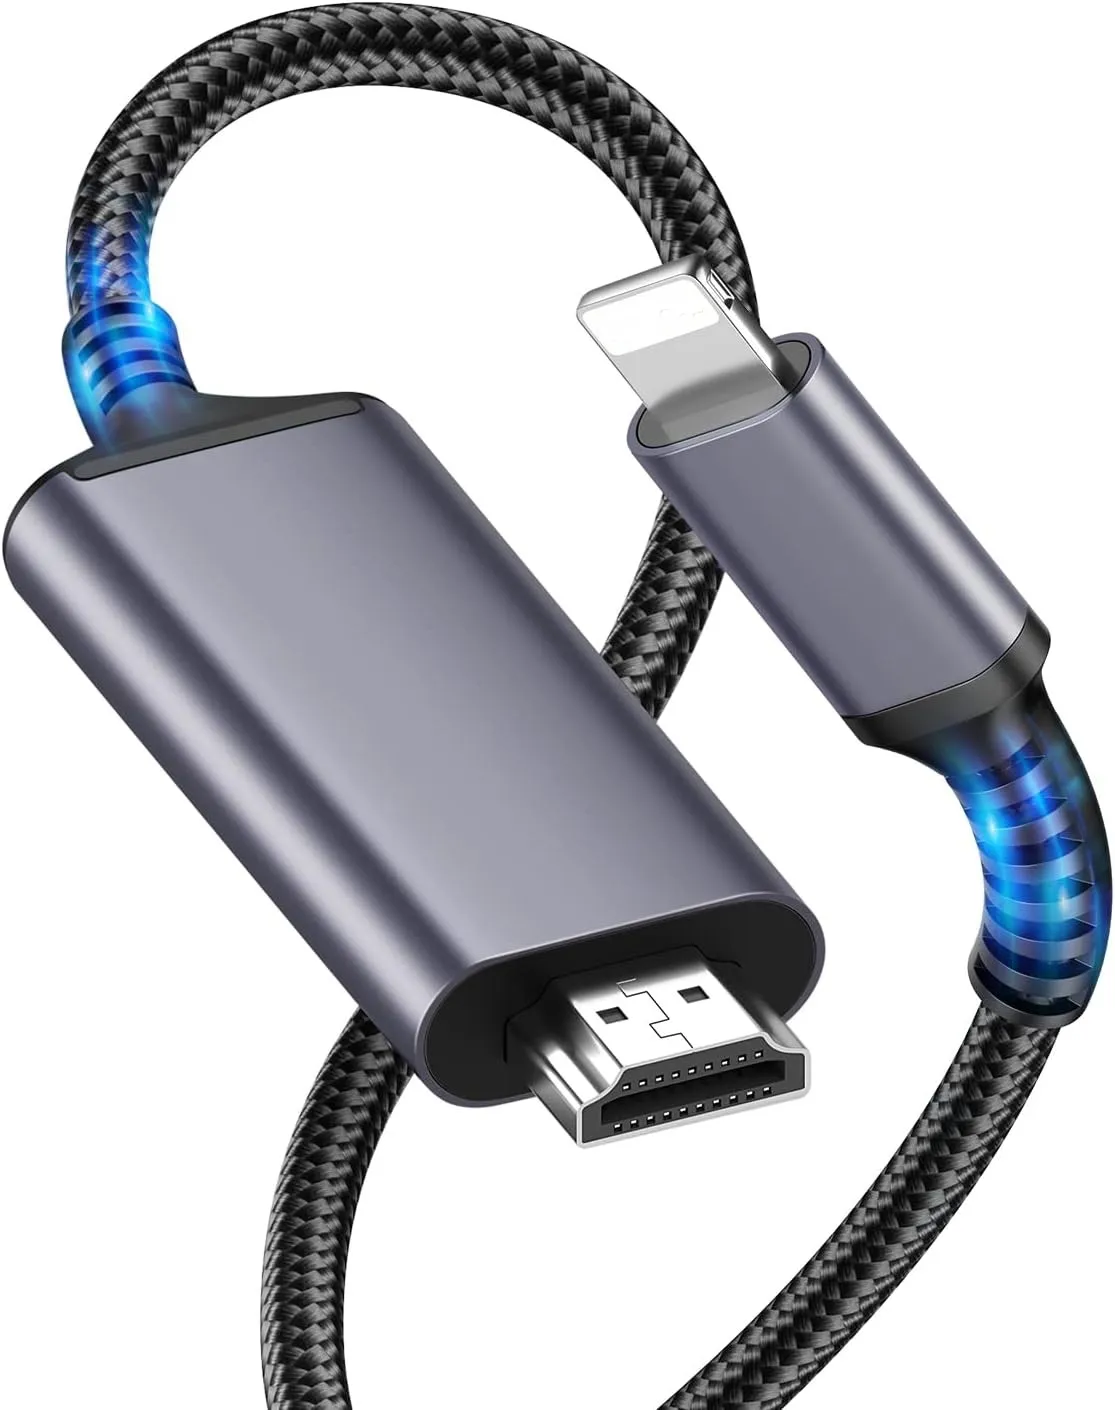 Cable adaptador Lightning a HDMI para iPhone, conexión iPhone a HDMI a TV, con conector de pantalla de sincronización AV digital iPhone 1080P, HDTV/monitor/proyector/2M.